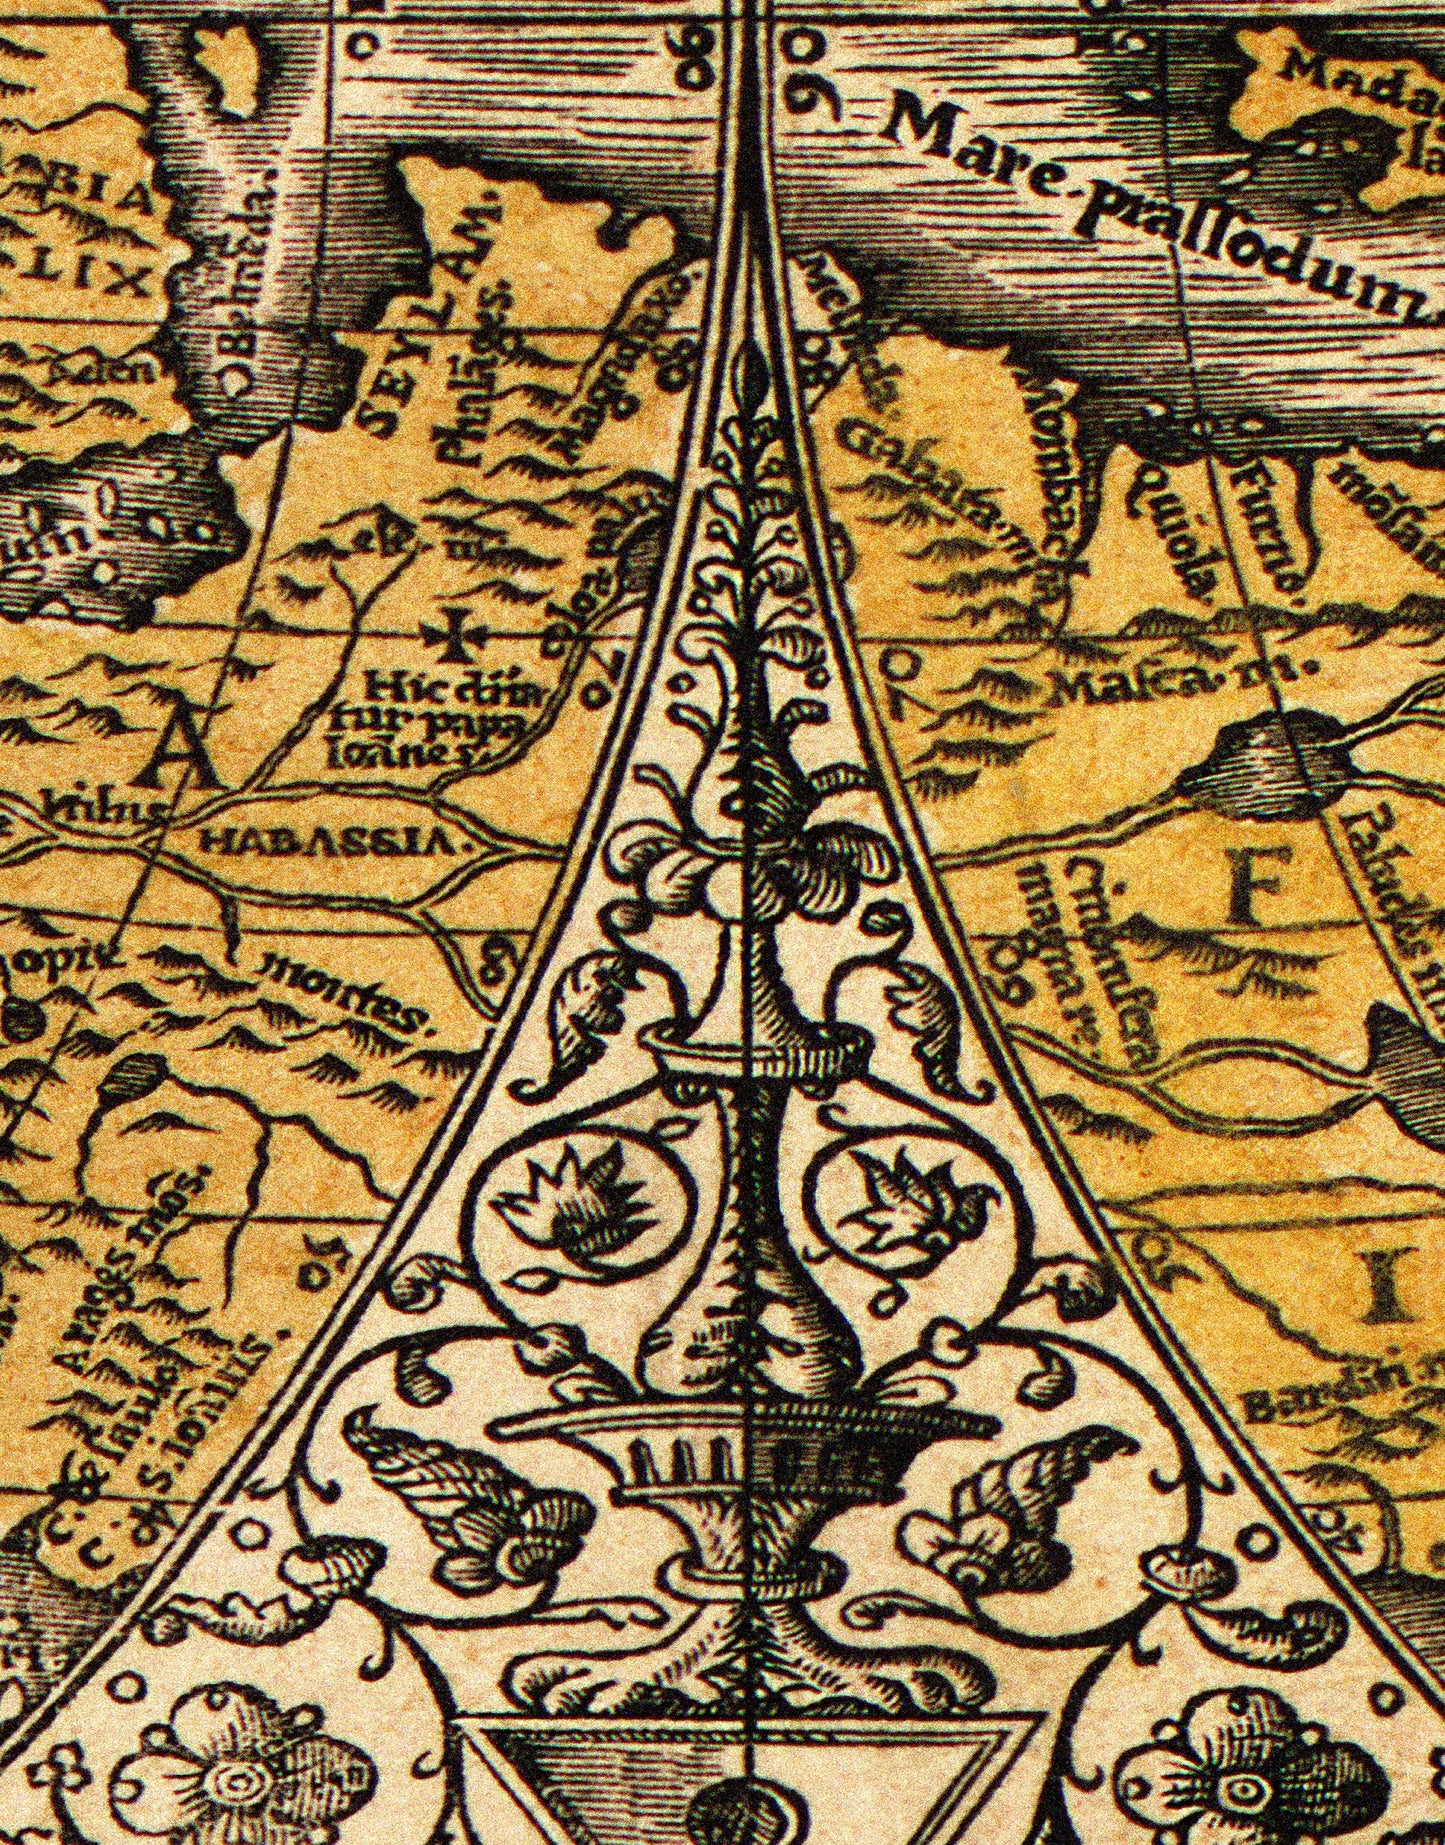 Vintage Antique World Map Wall Mural. Noua, et integra uniuersi orbis descriptio (1531) by Oronce Finé. #6352